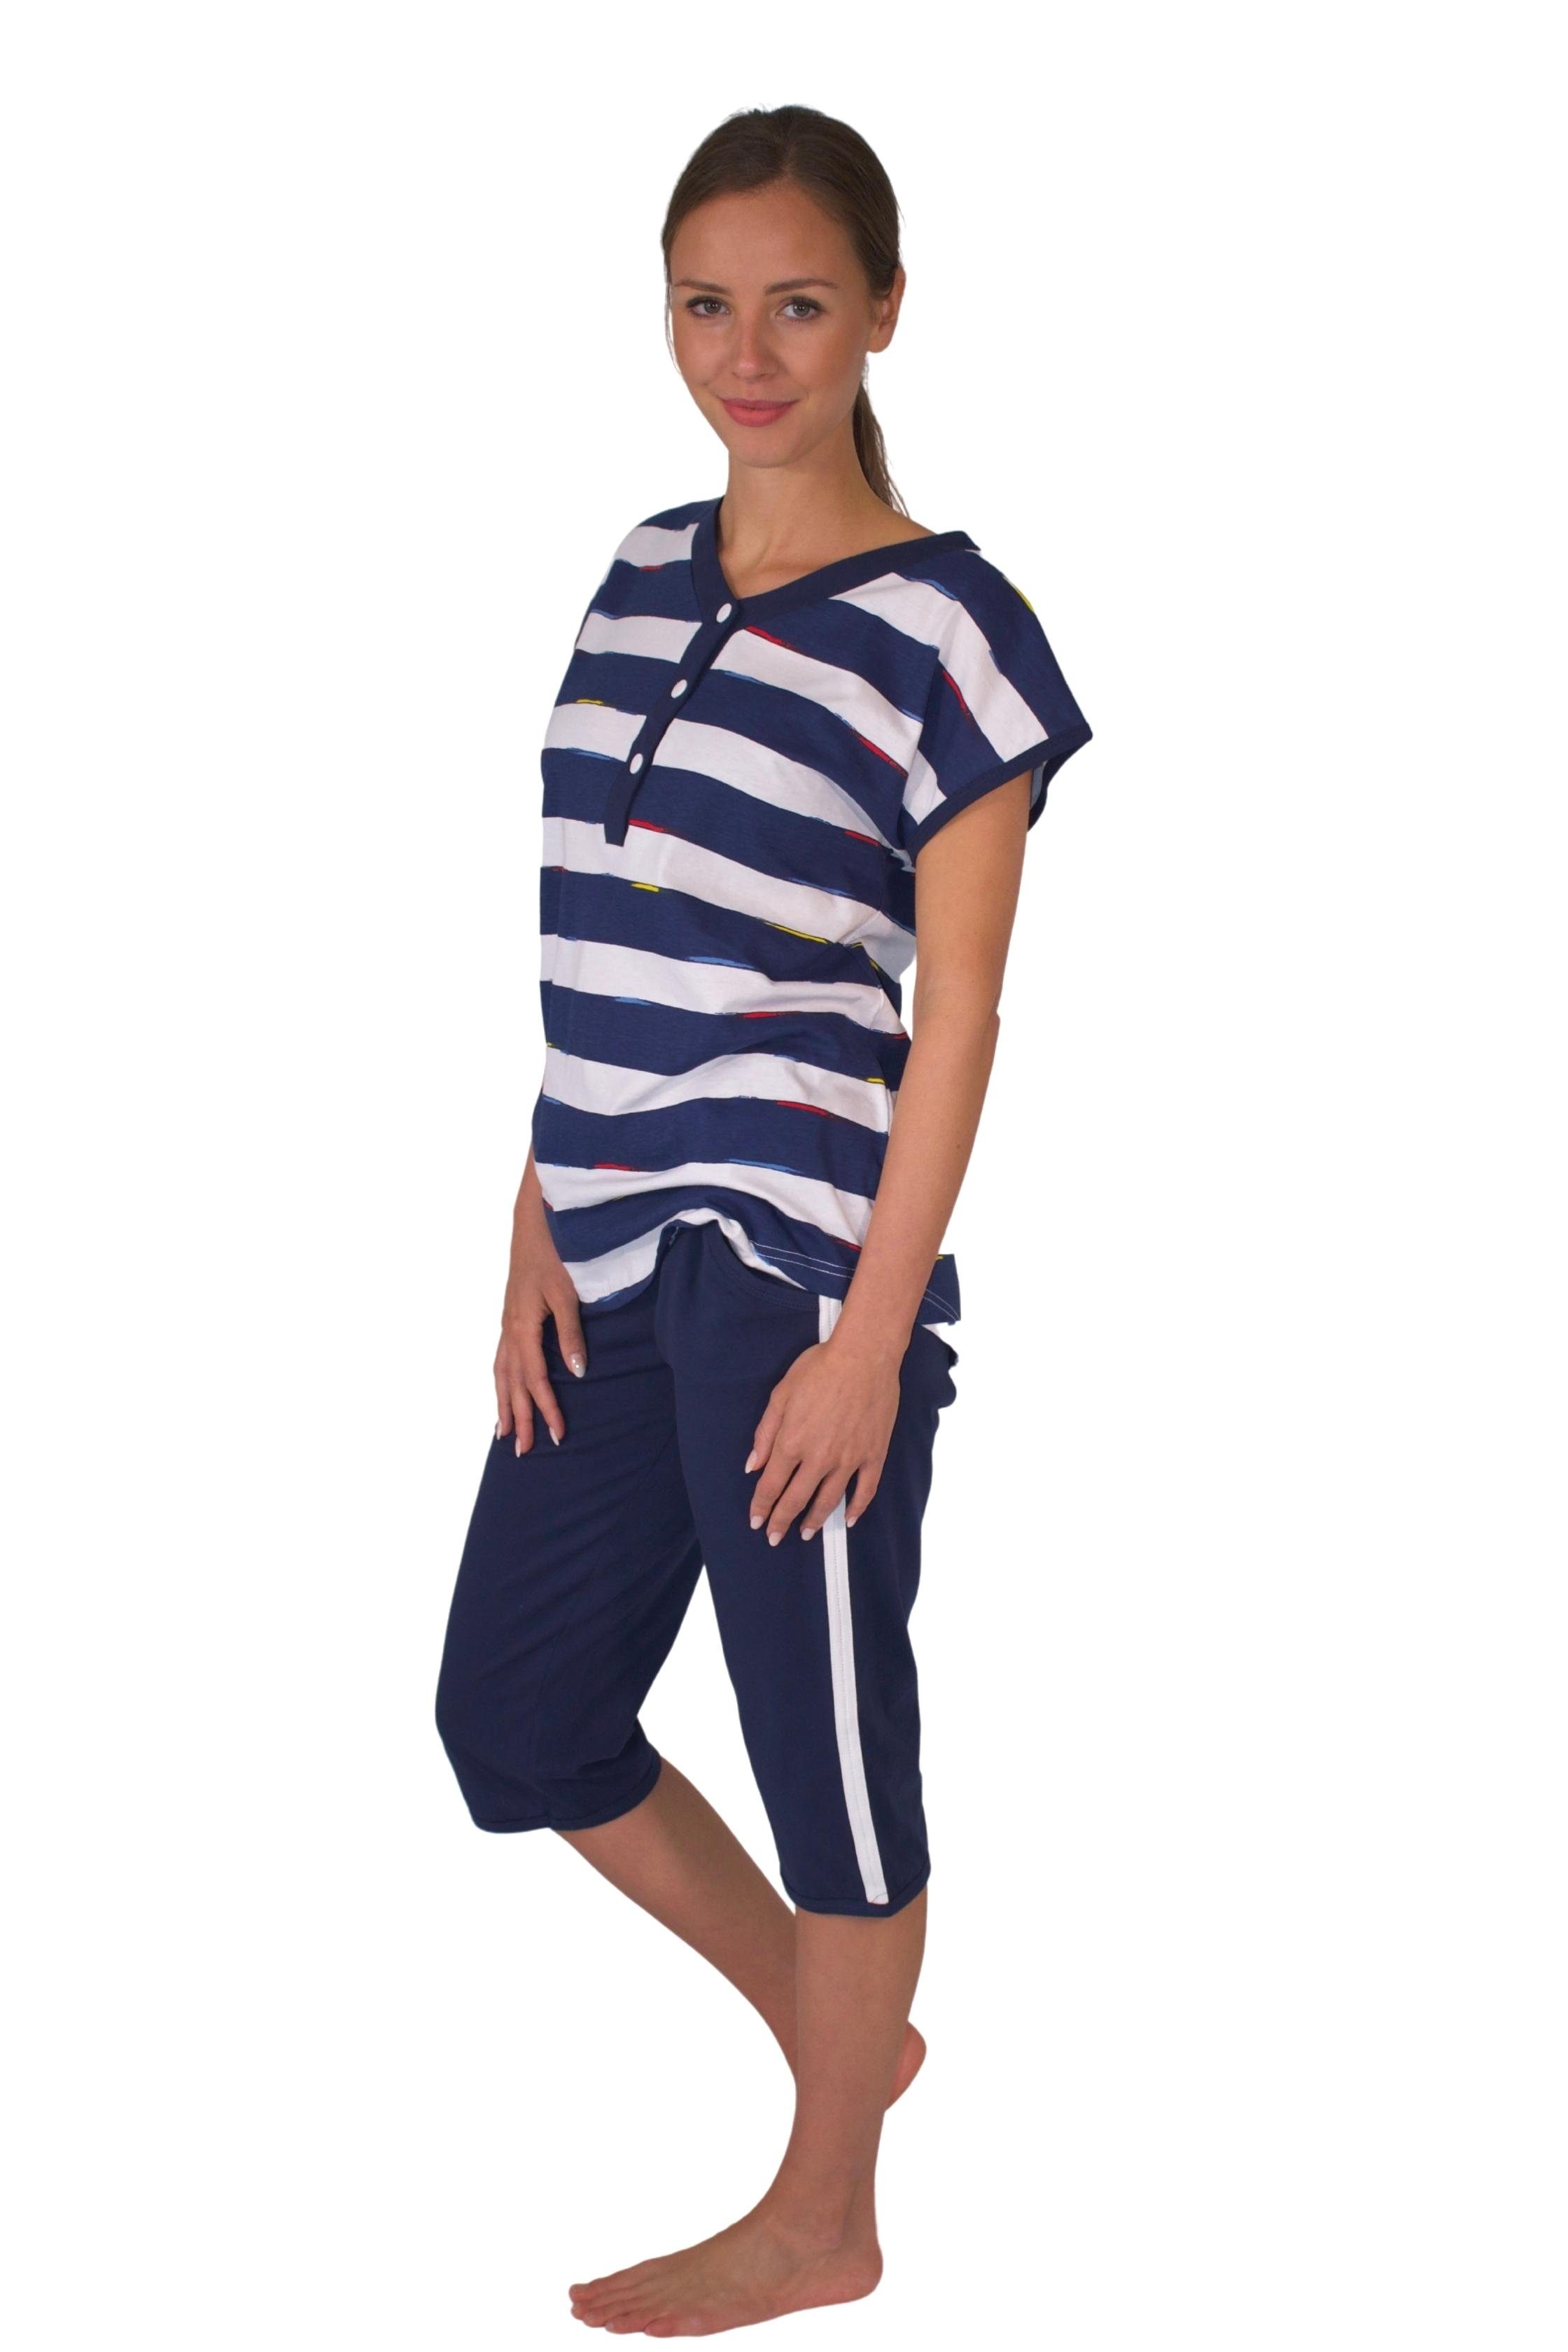 Wäsche/Bademode Pyjamas Consult-Tex Capri-Pyjama Damen Capri Pyjama Schlafanzug (Spar-Set, 1 Set) Oberteil mit Streifendruck